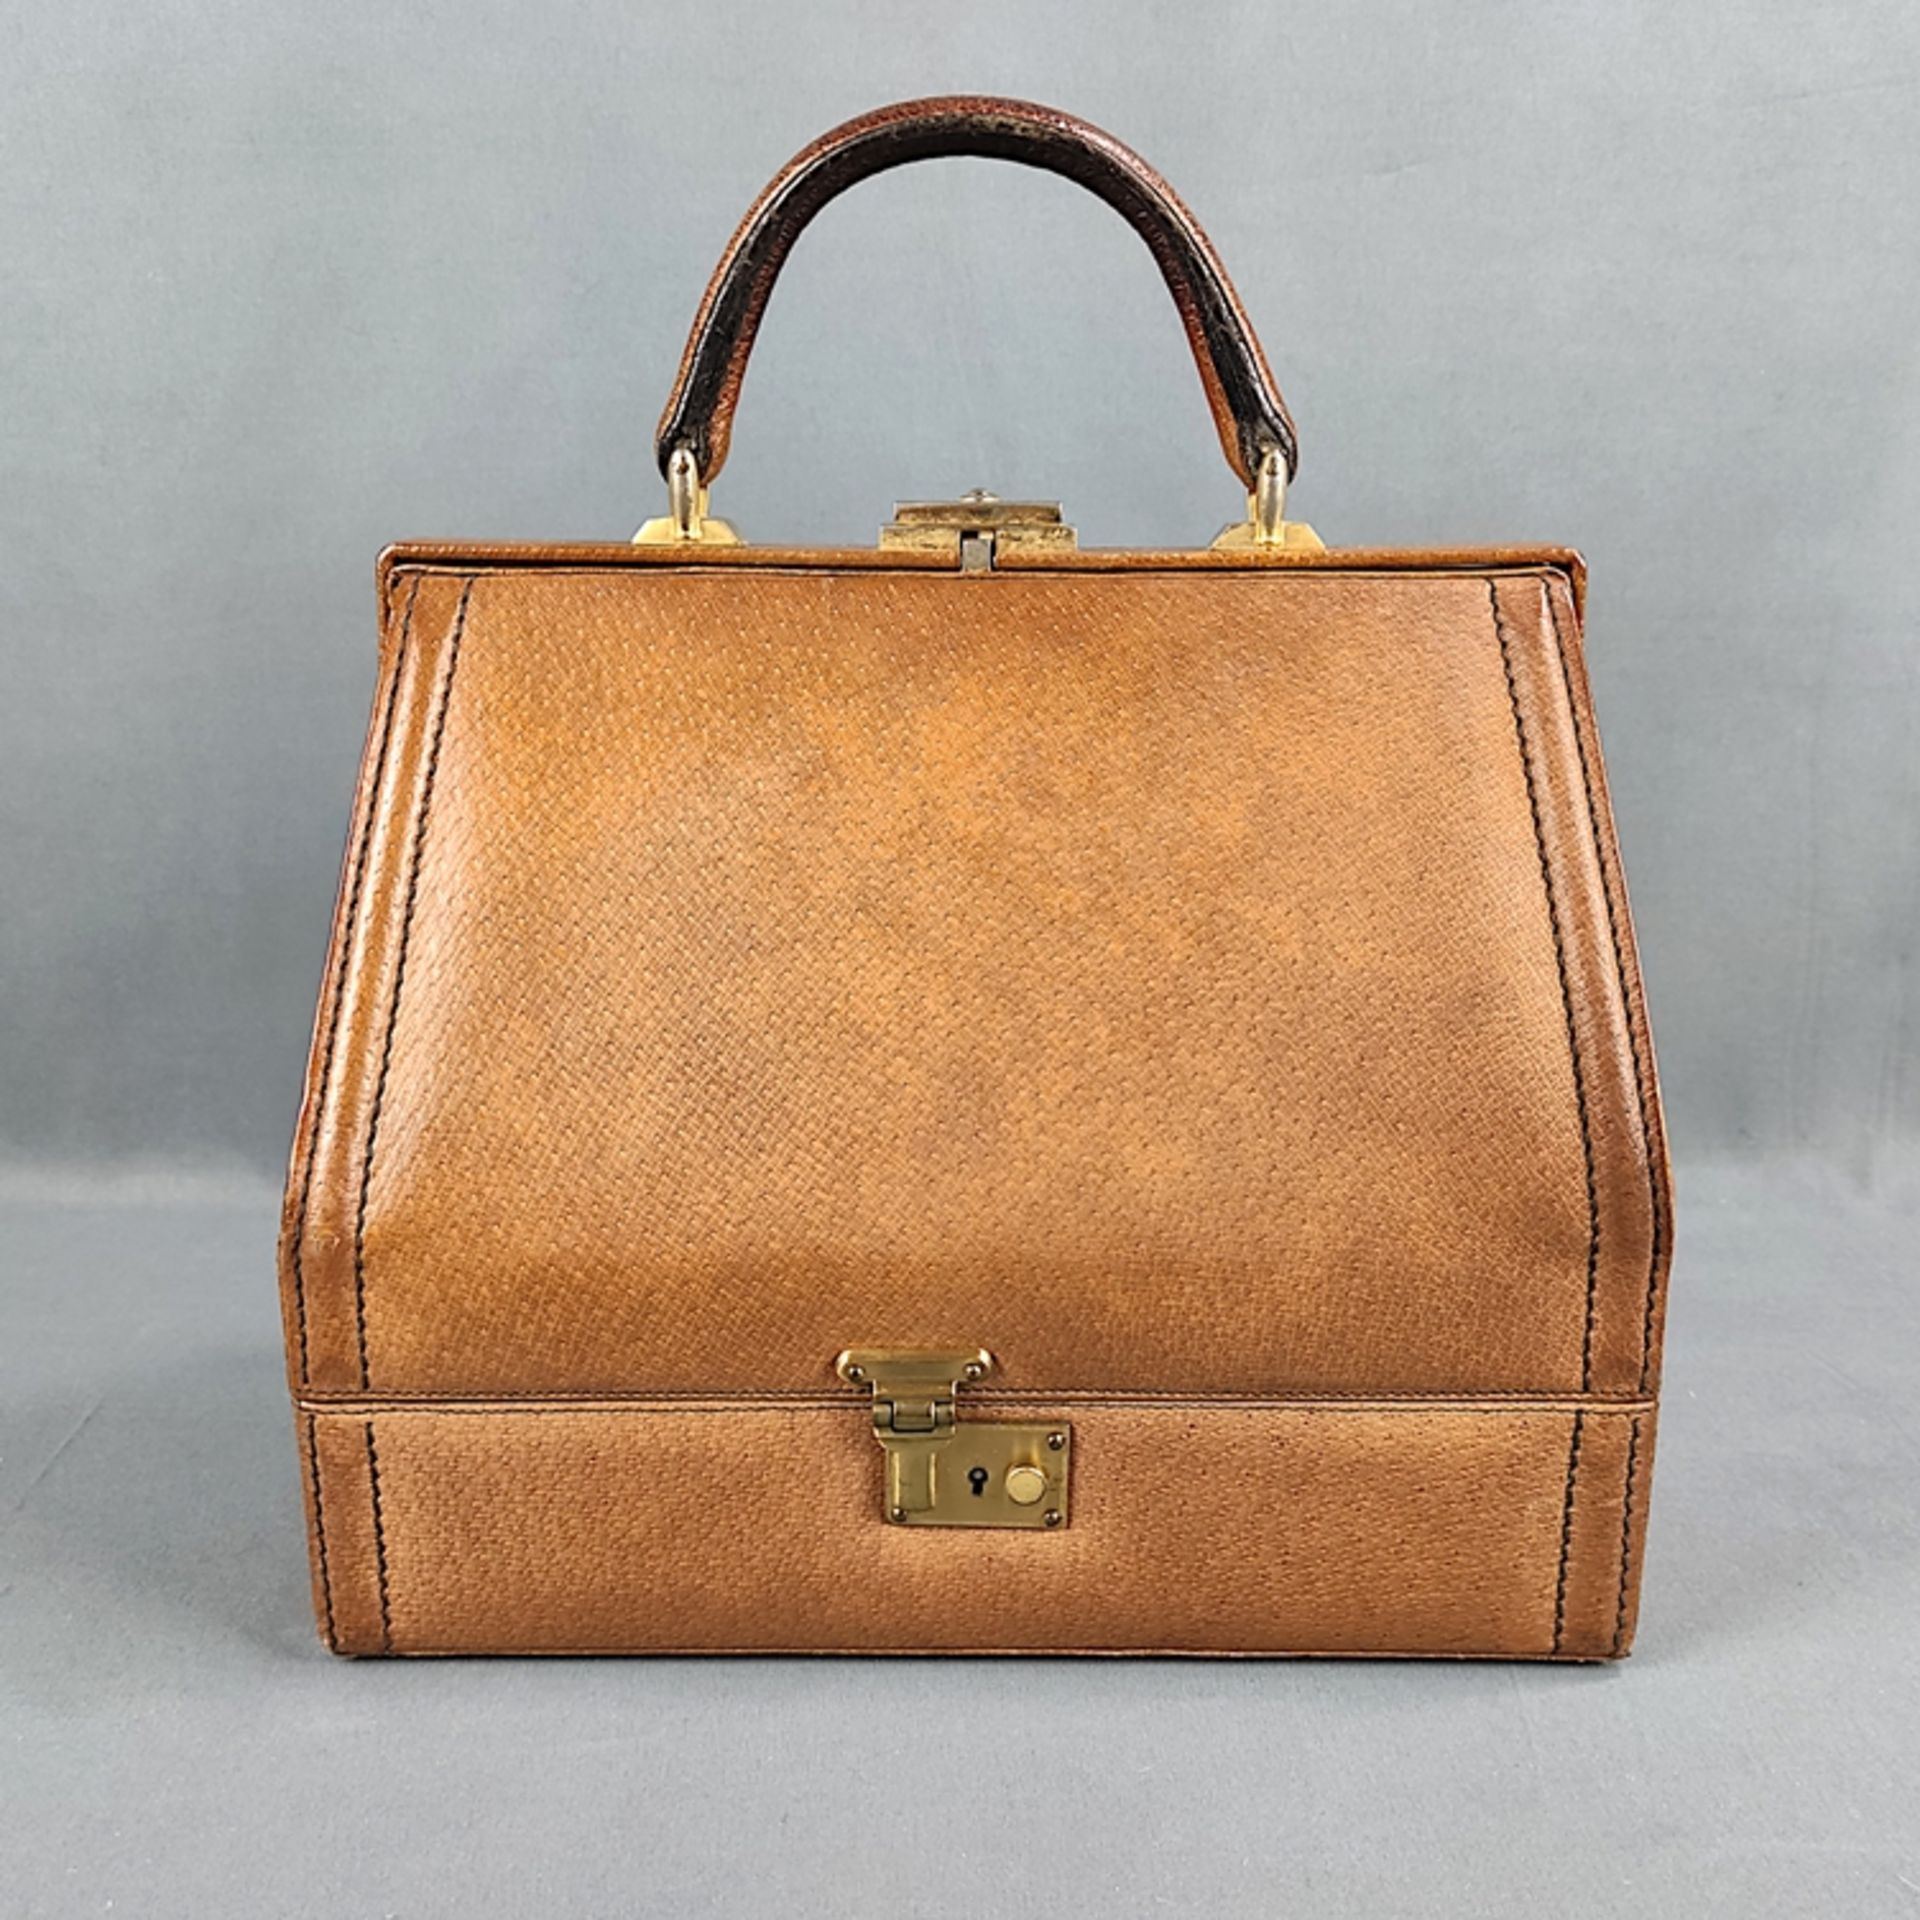 Vintage Handtasche, hellbraunes Leder, Kofferform, George Dorian, unten Fach mit Schlüssel verschli